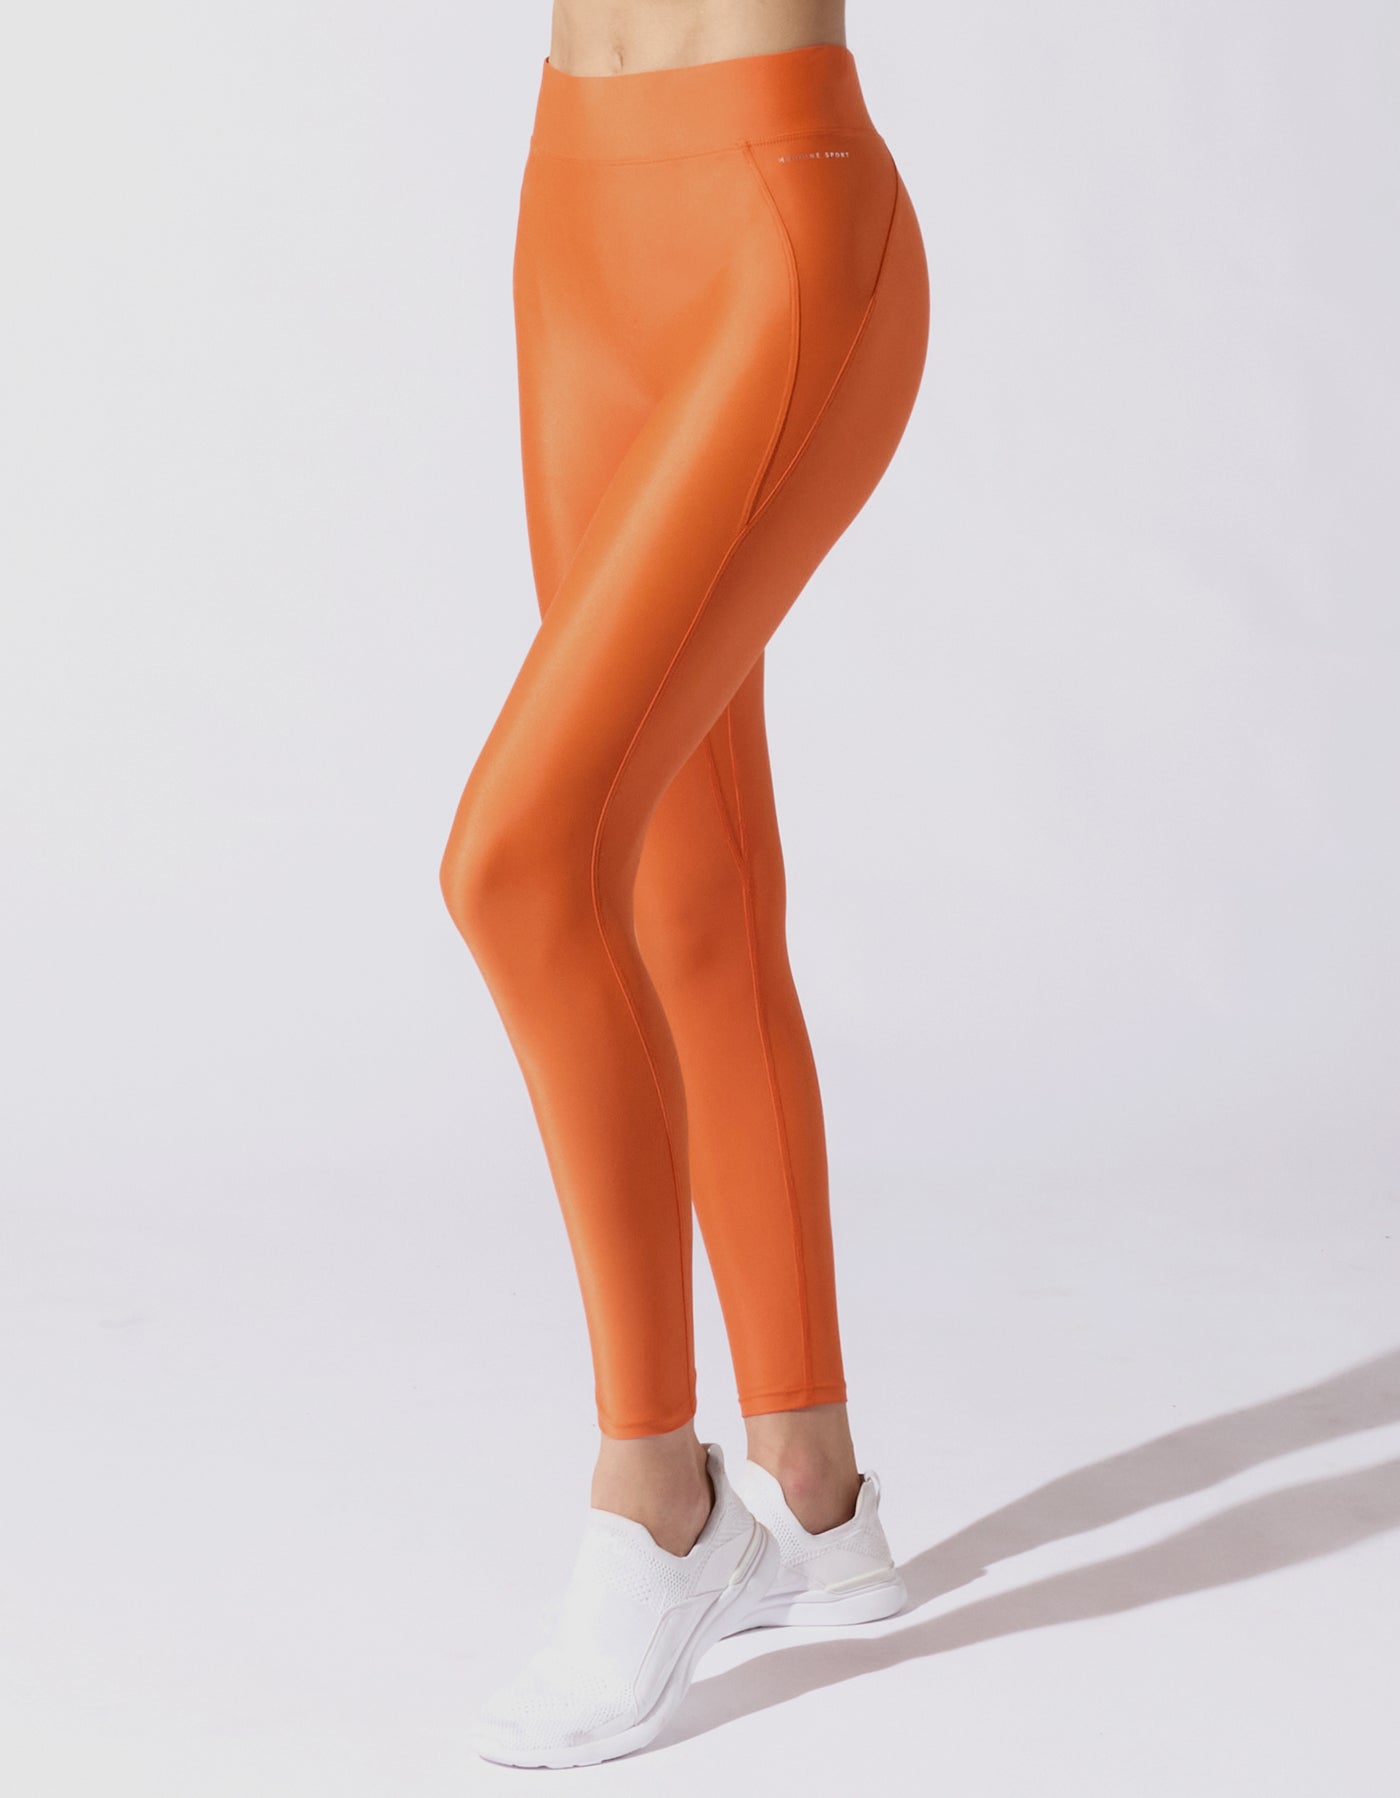 Tangerine Leggings for Women for sale